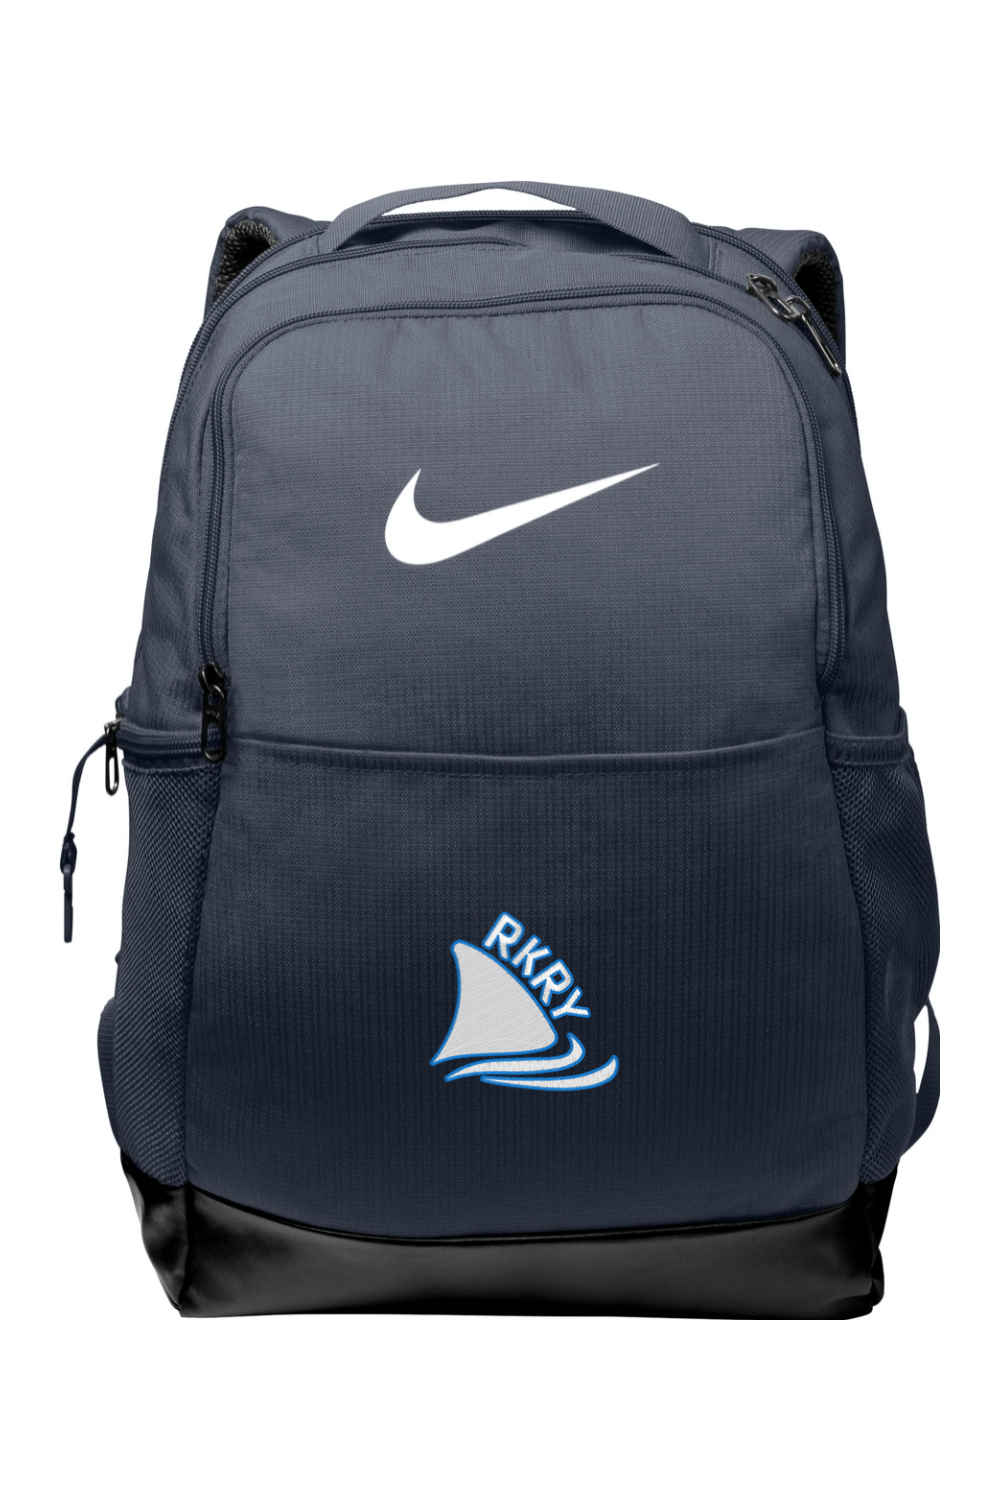 RKRY Nike Brasilia Medium Backpack